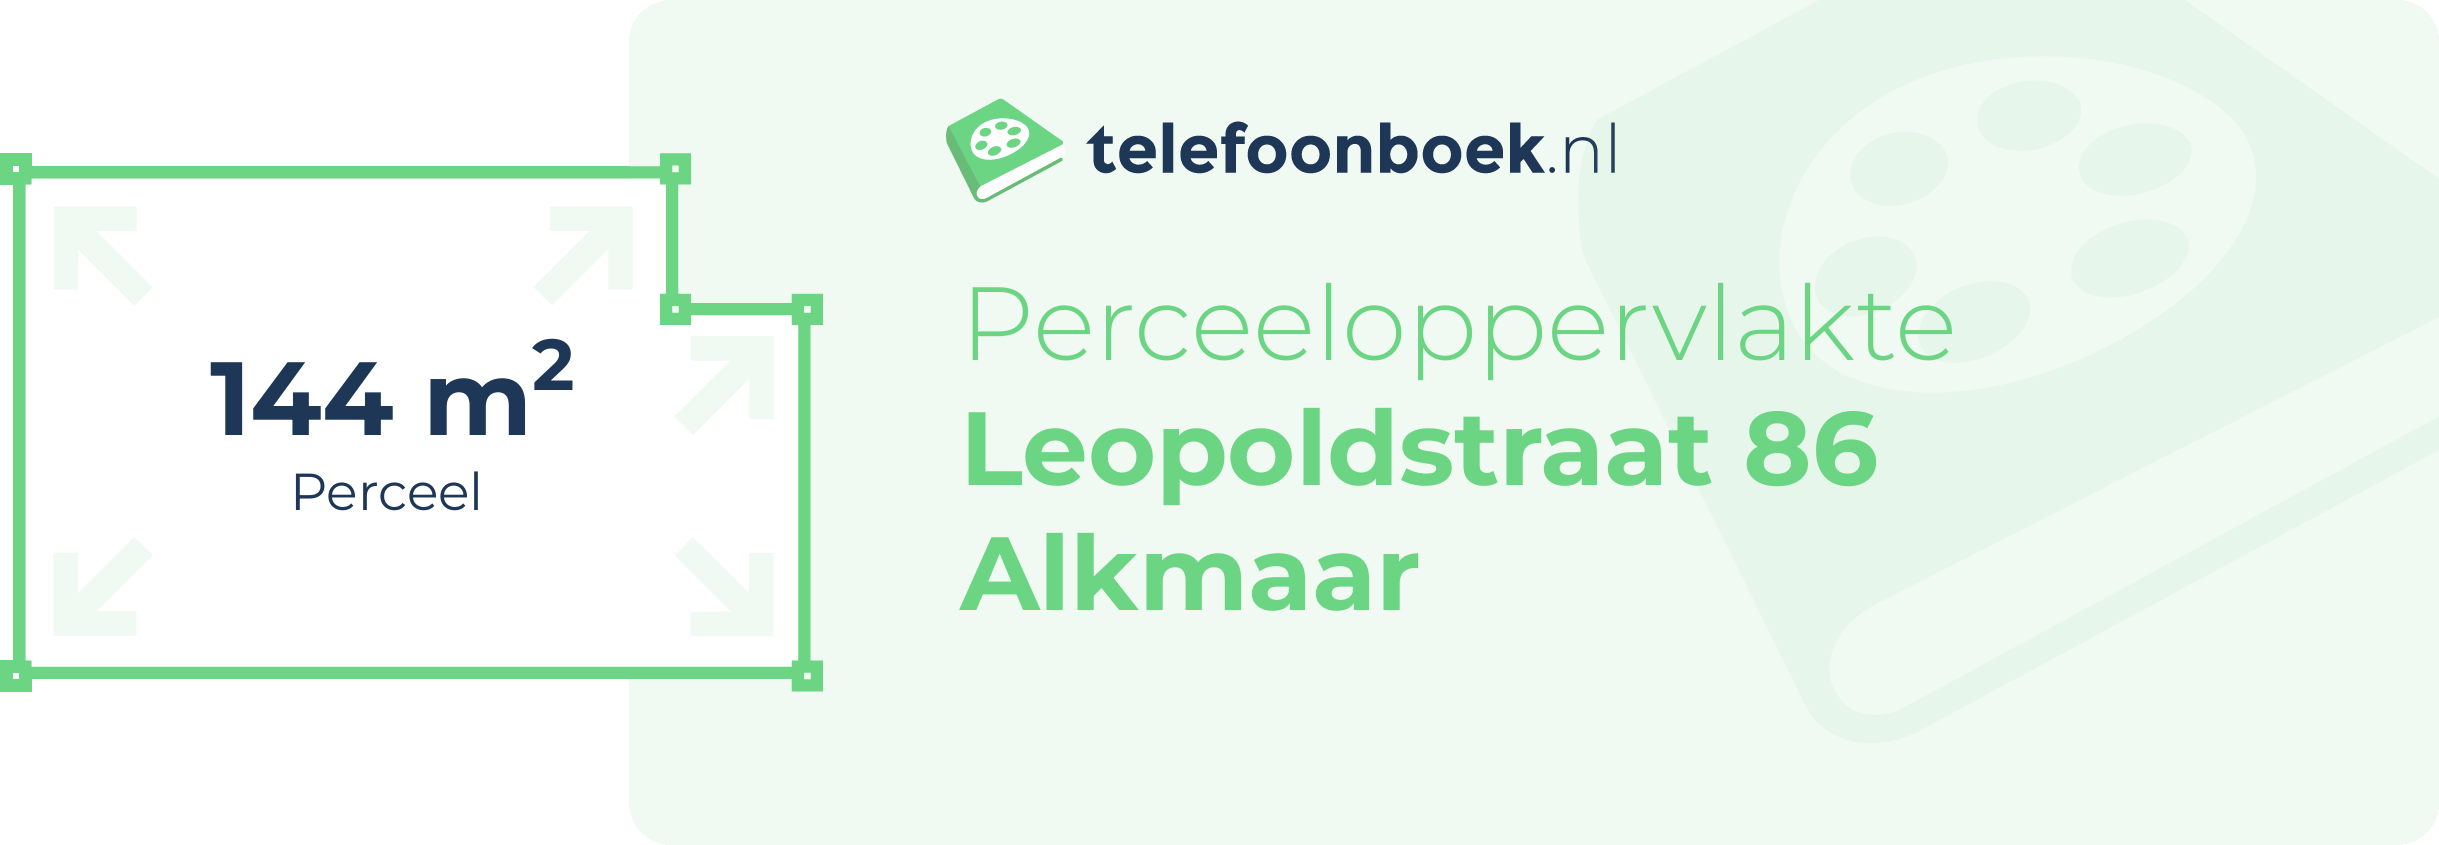 Perceeloppervlakte Leopoldstraat 86 Alkmaar